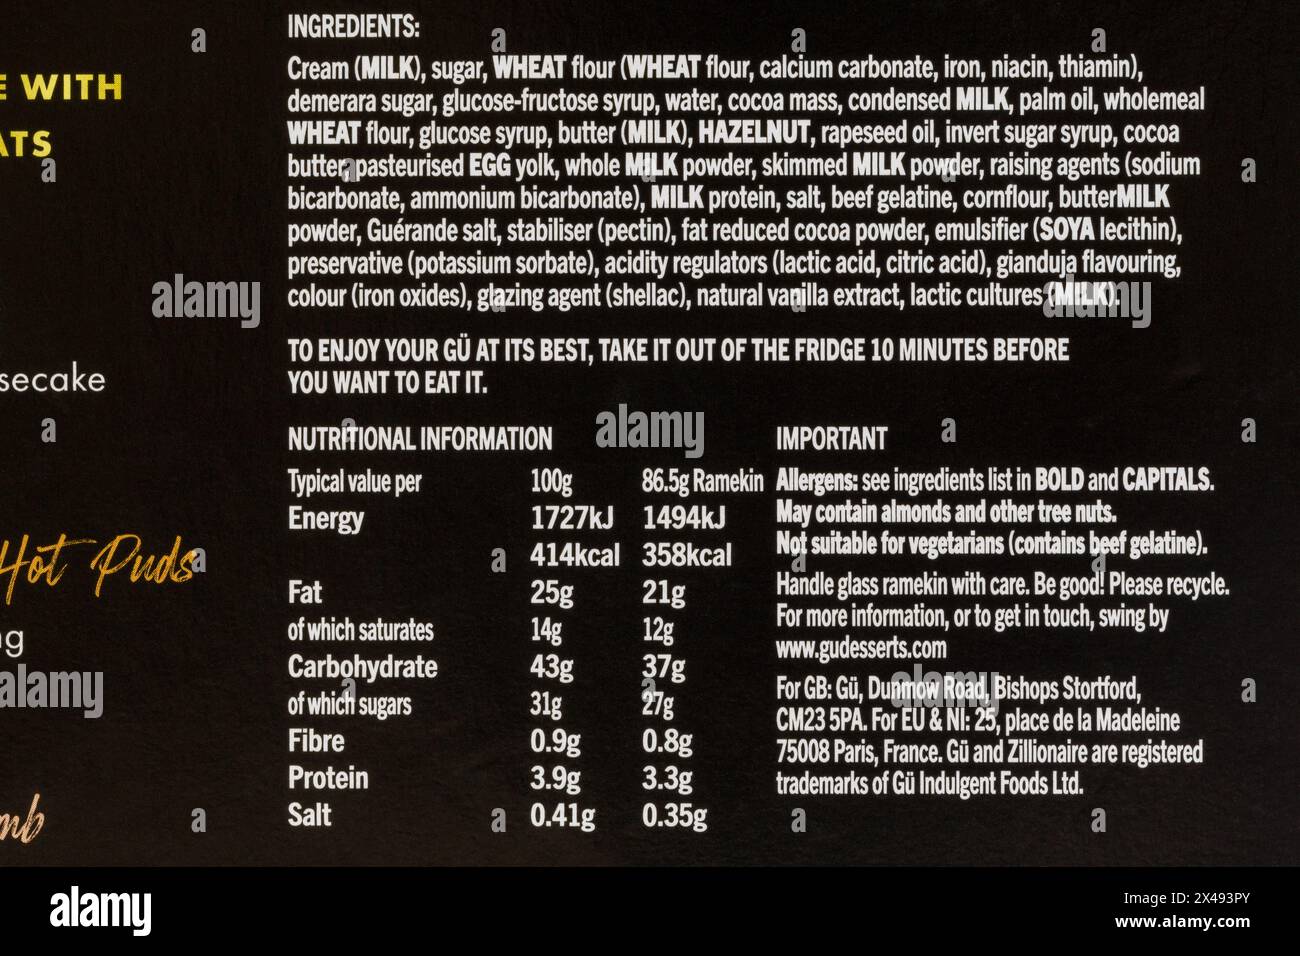 Elenco degli ingredienti e informazioni nutrizionali sulla scatola di cheesecake Gü Hazelnut Praline zillionaire Limited Edition Foto Stock